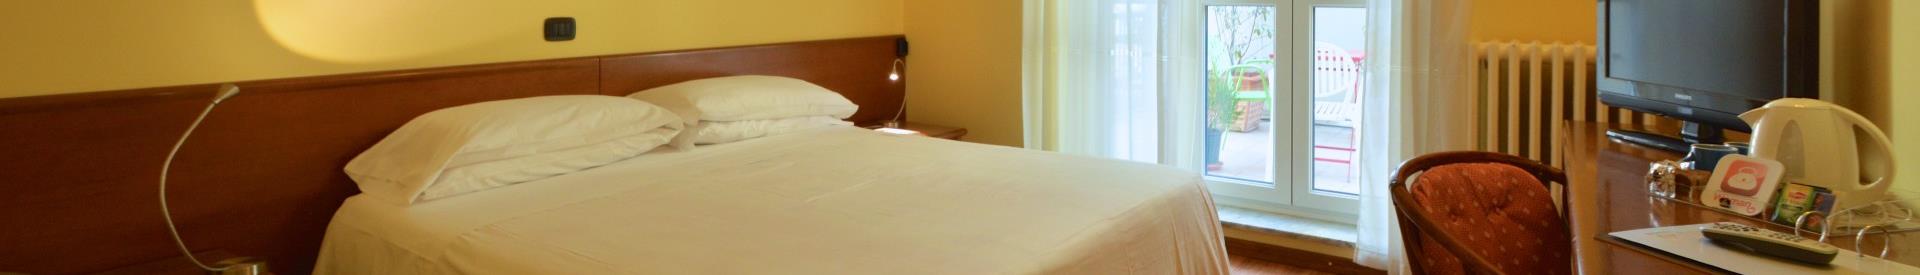 Réservez votre chambre dès maintenant dans le meilleur hôtel 3 étoiles de Turin